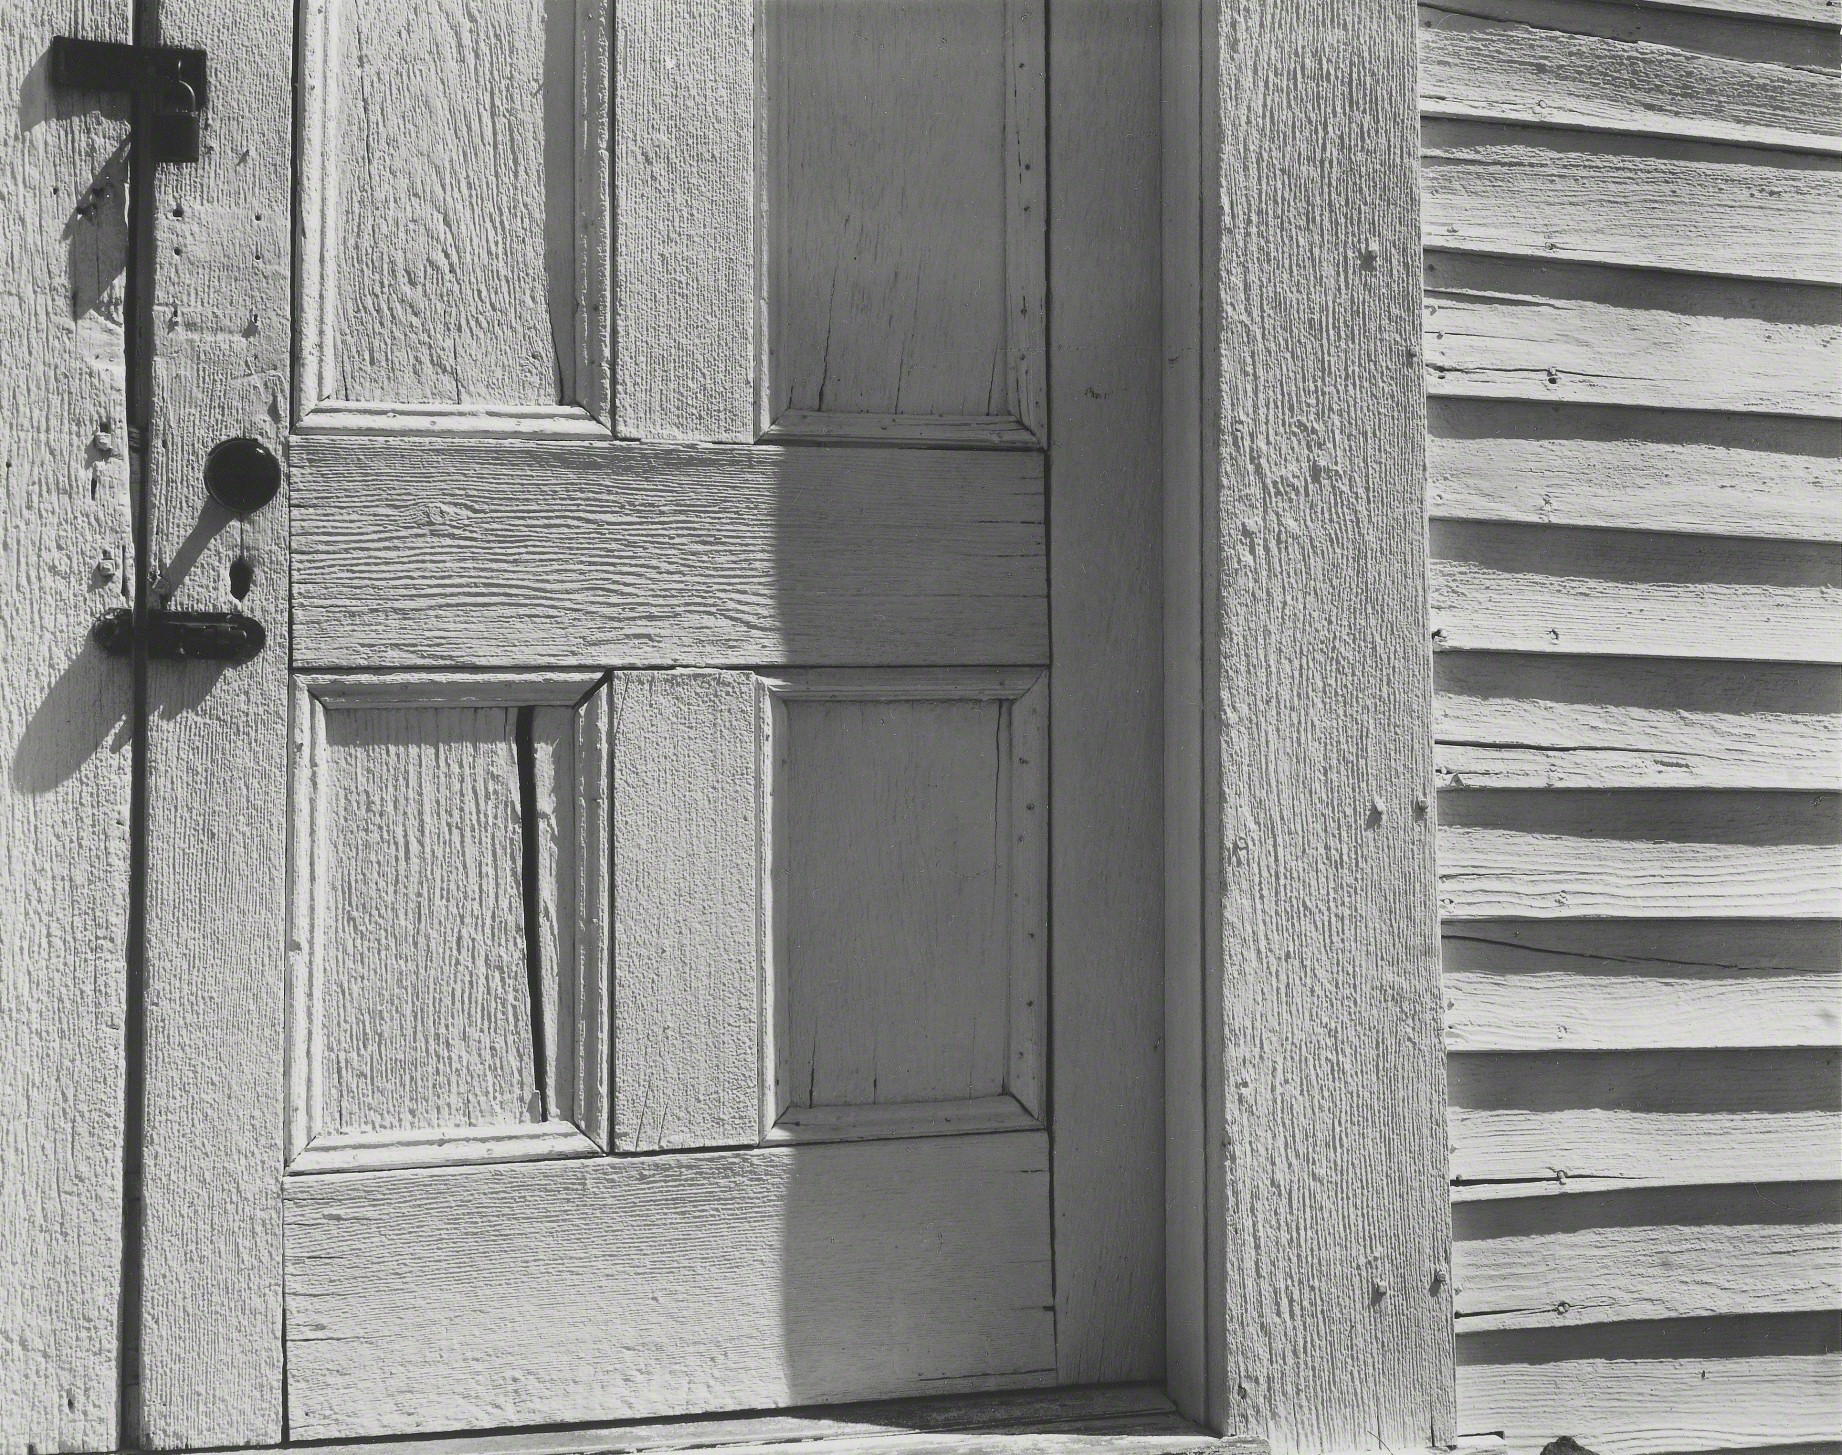 Церковная дверь. Хорнитос, Калифорния, 1940. Фотограф Эдвард Уэстон